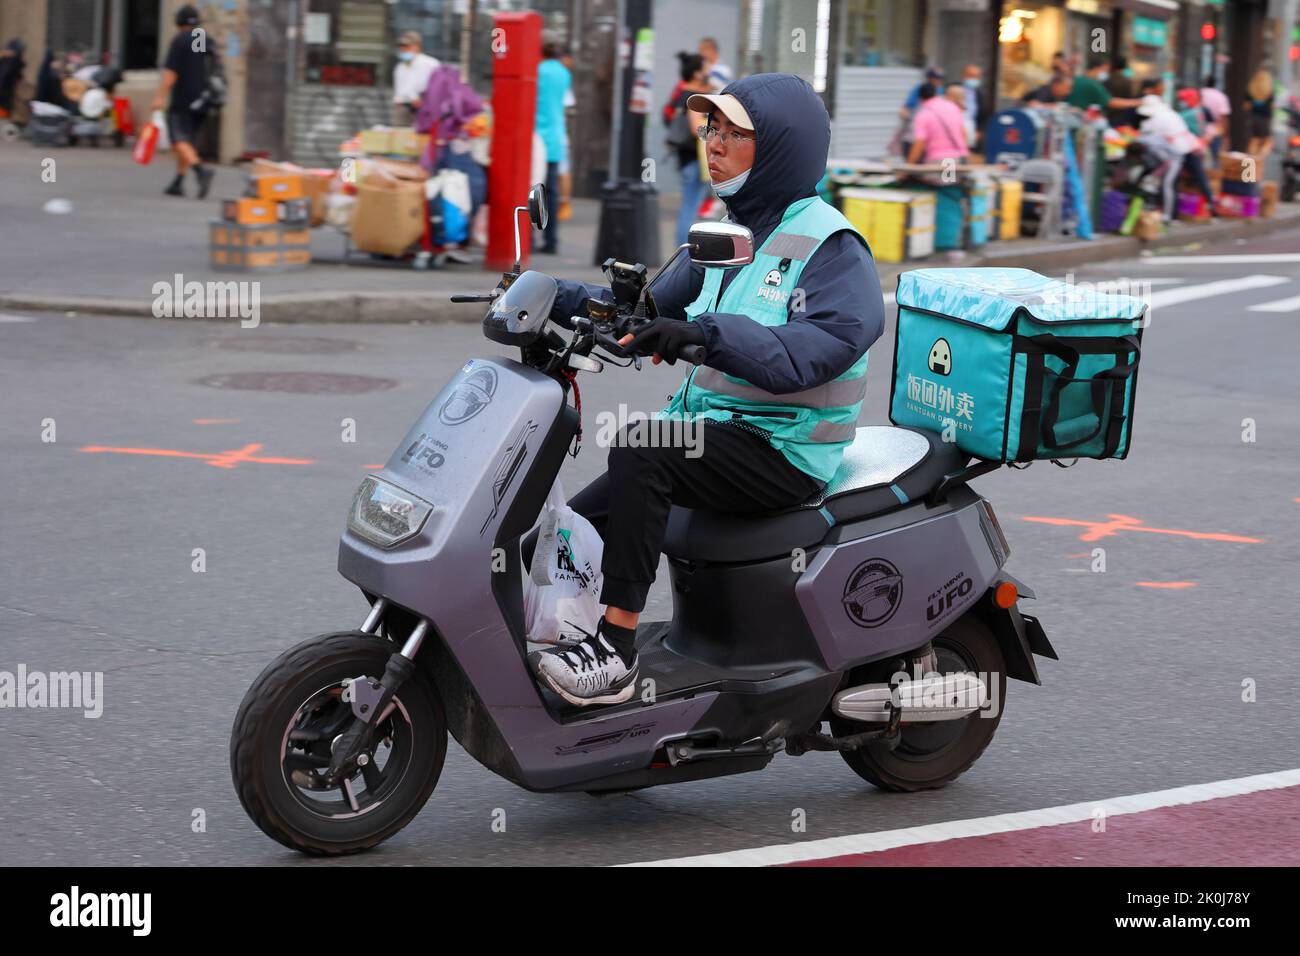 Une personne de livraison de Fantuan sur un cyclomoteur électrique dans le centre-ville de Flushing, New York. Fantuan 飯糰外賣Asian livraison de nourriture Banque D'Images